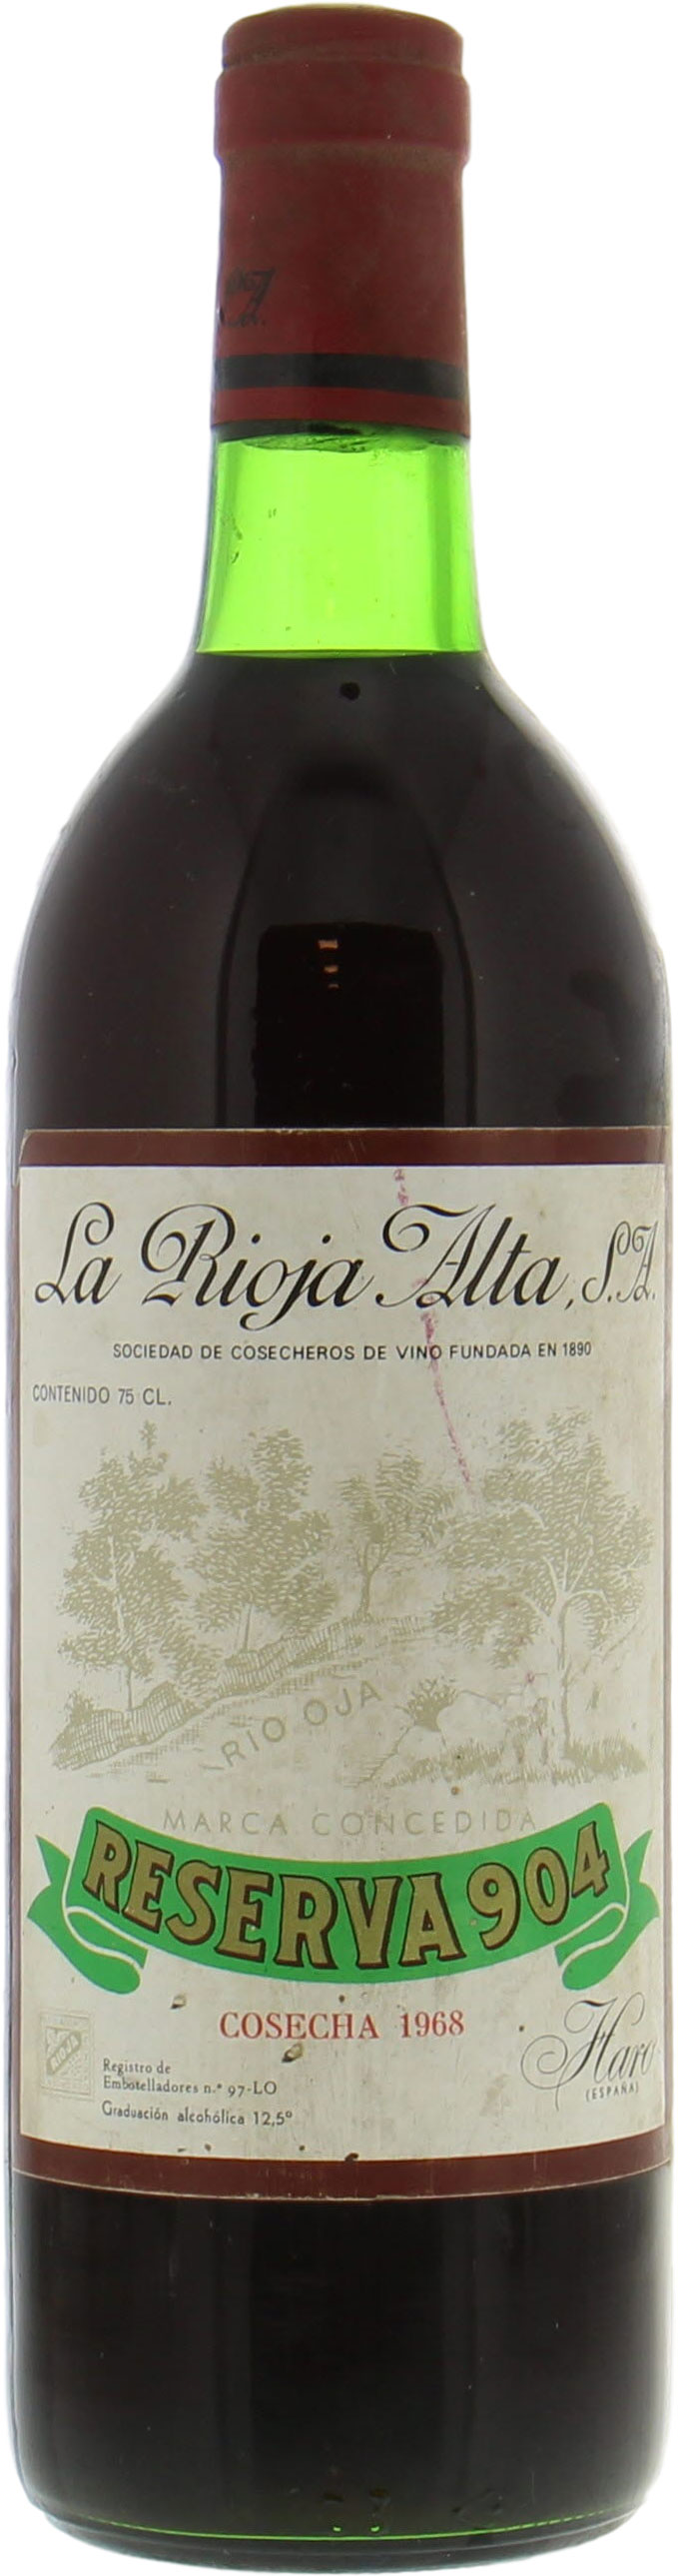 La Rioja Alta - Gran Reserva 904 1968